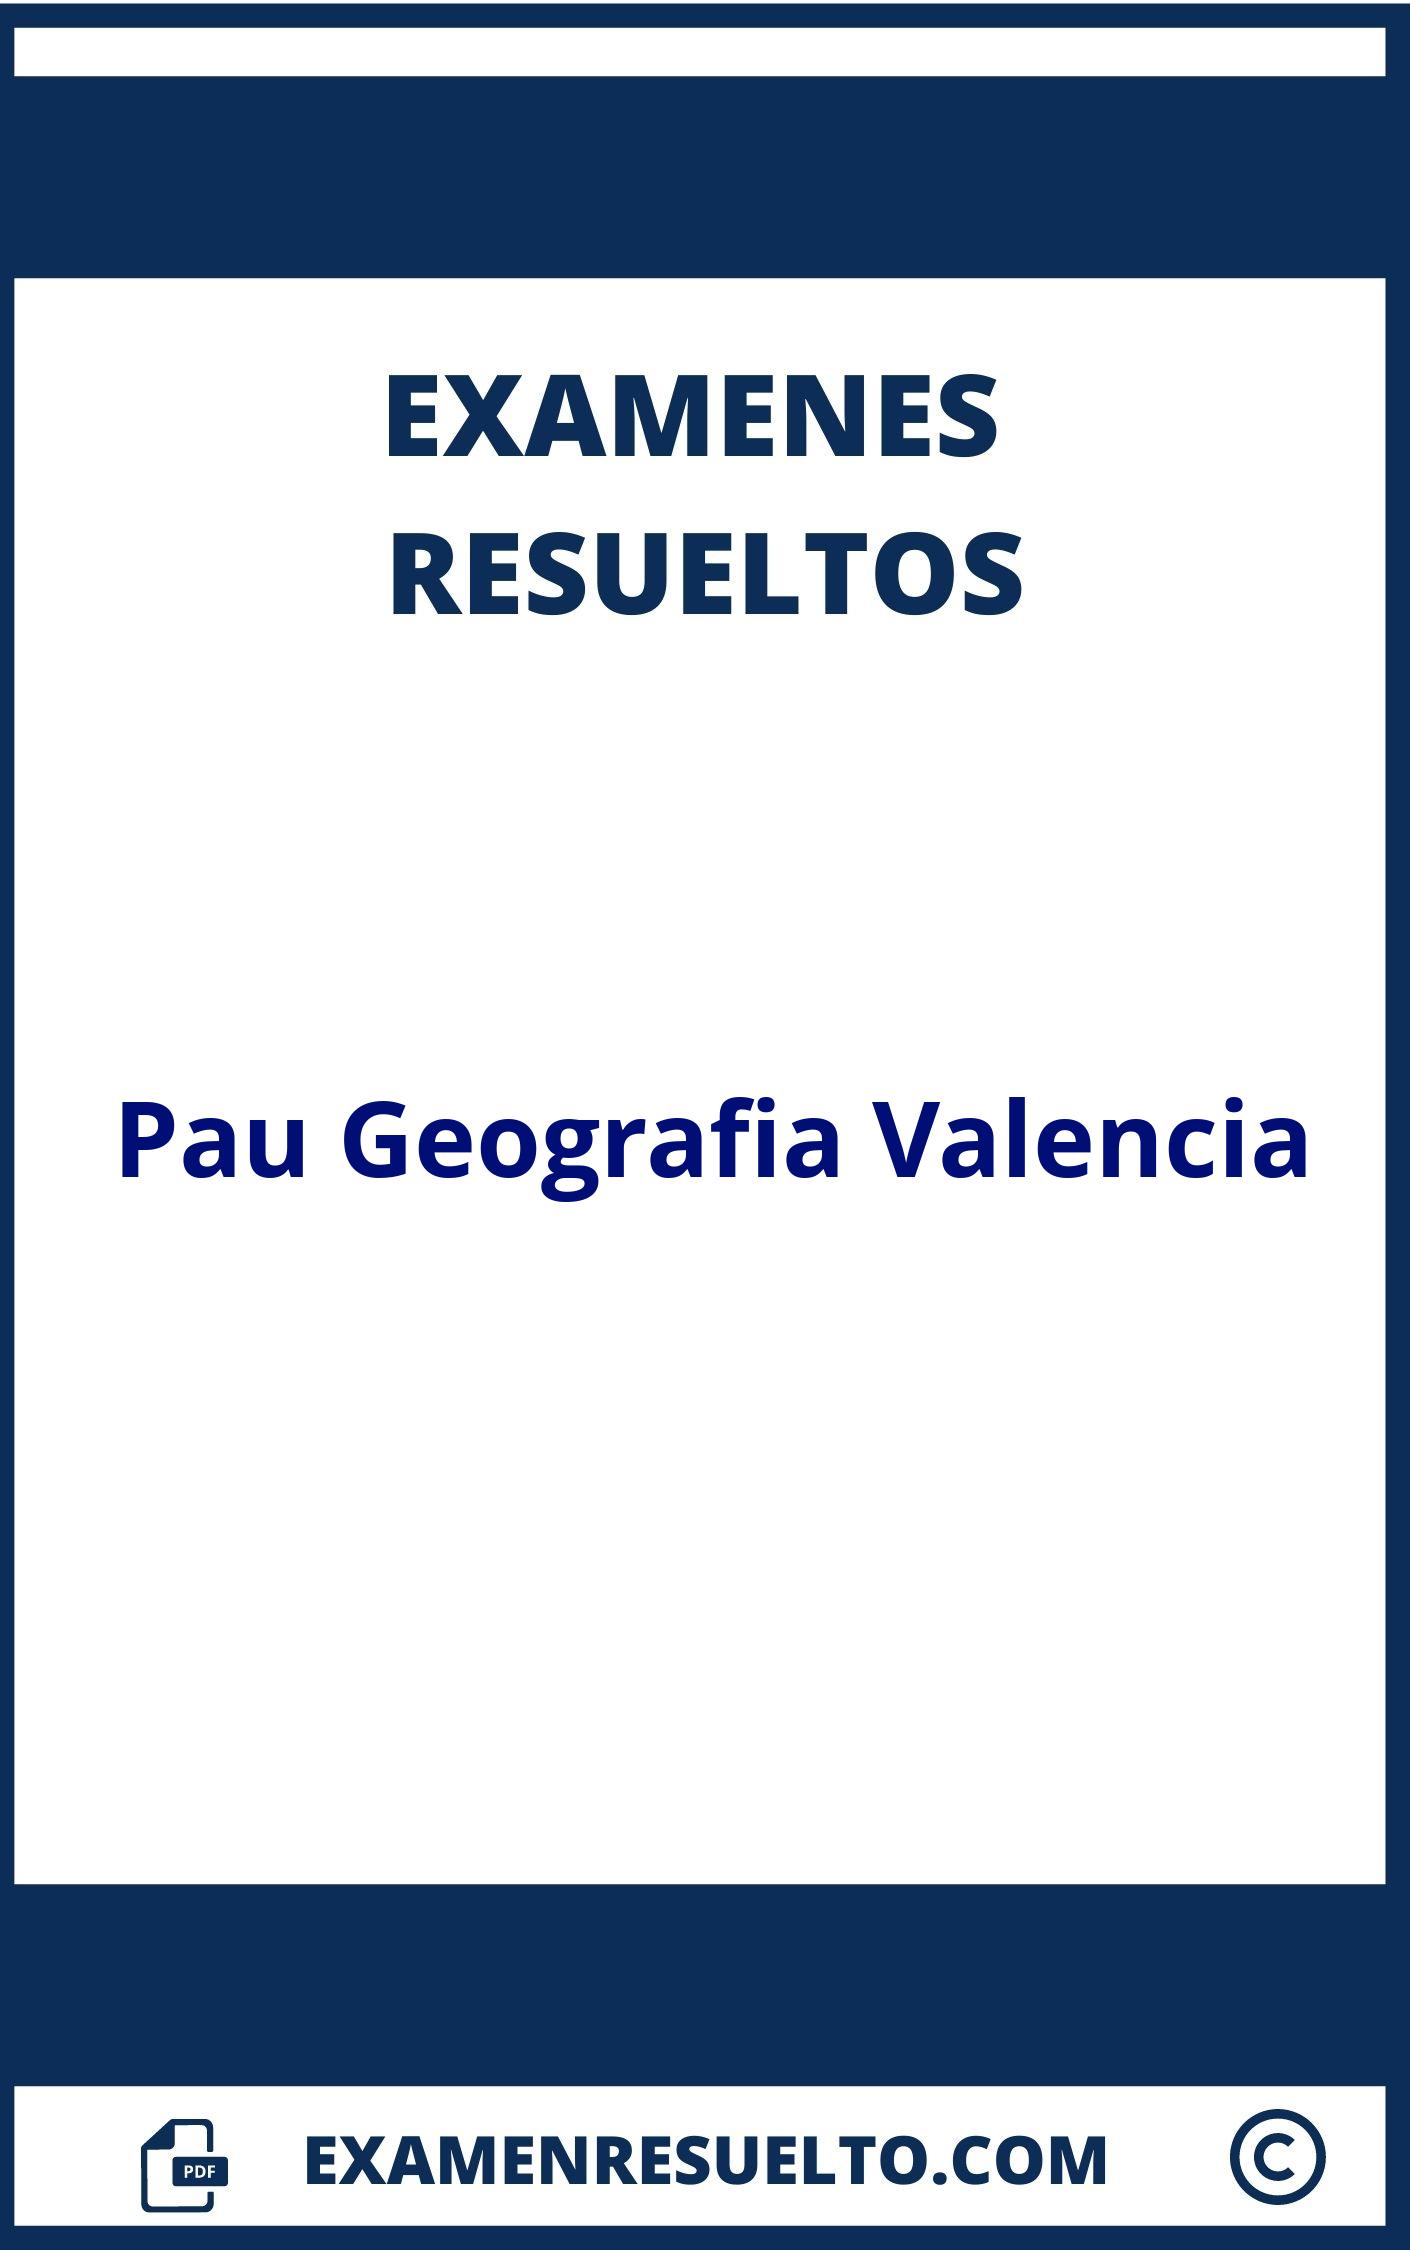 Examenes Pau Geografia Valencia Resueltos